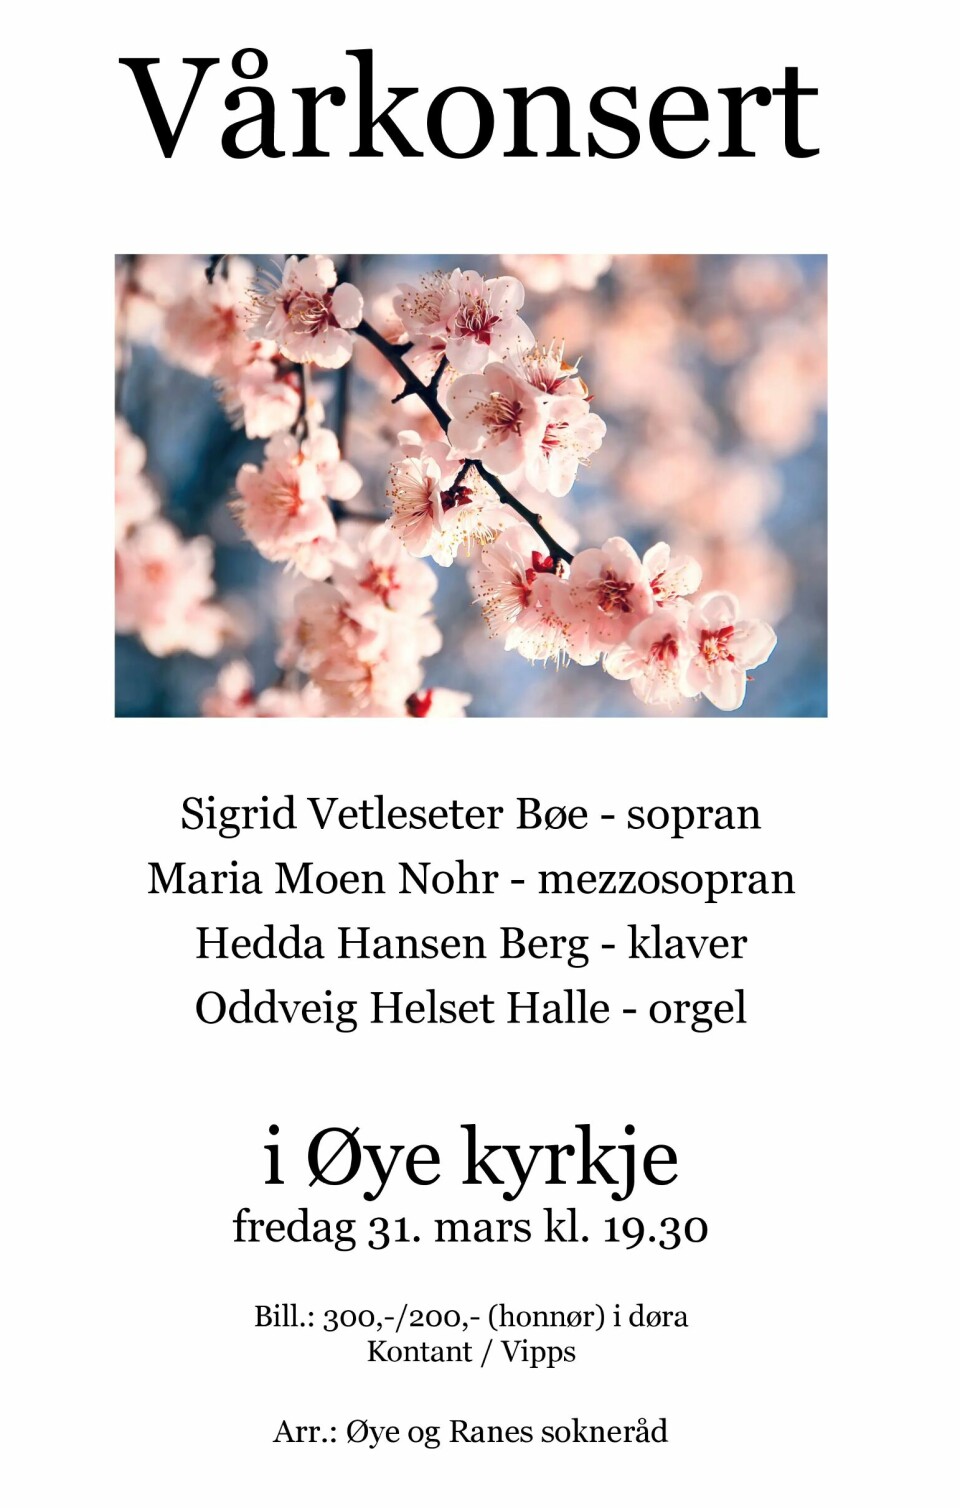 En plakat om vårkonsert i Øye kirke fredag 31. mars kl. 19.30
På plakaten er det bilde av kirsebærblomster